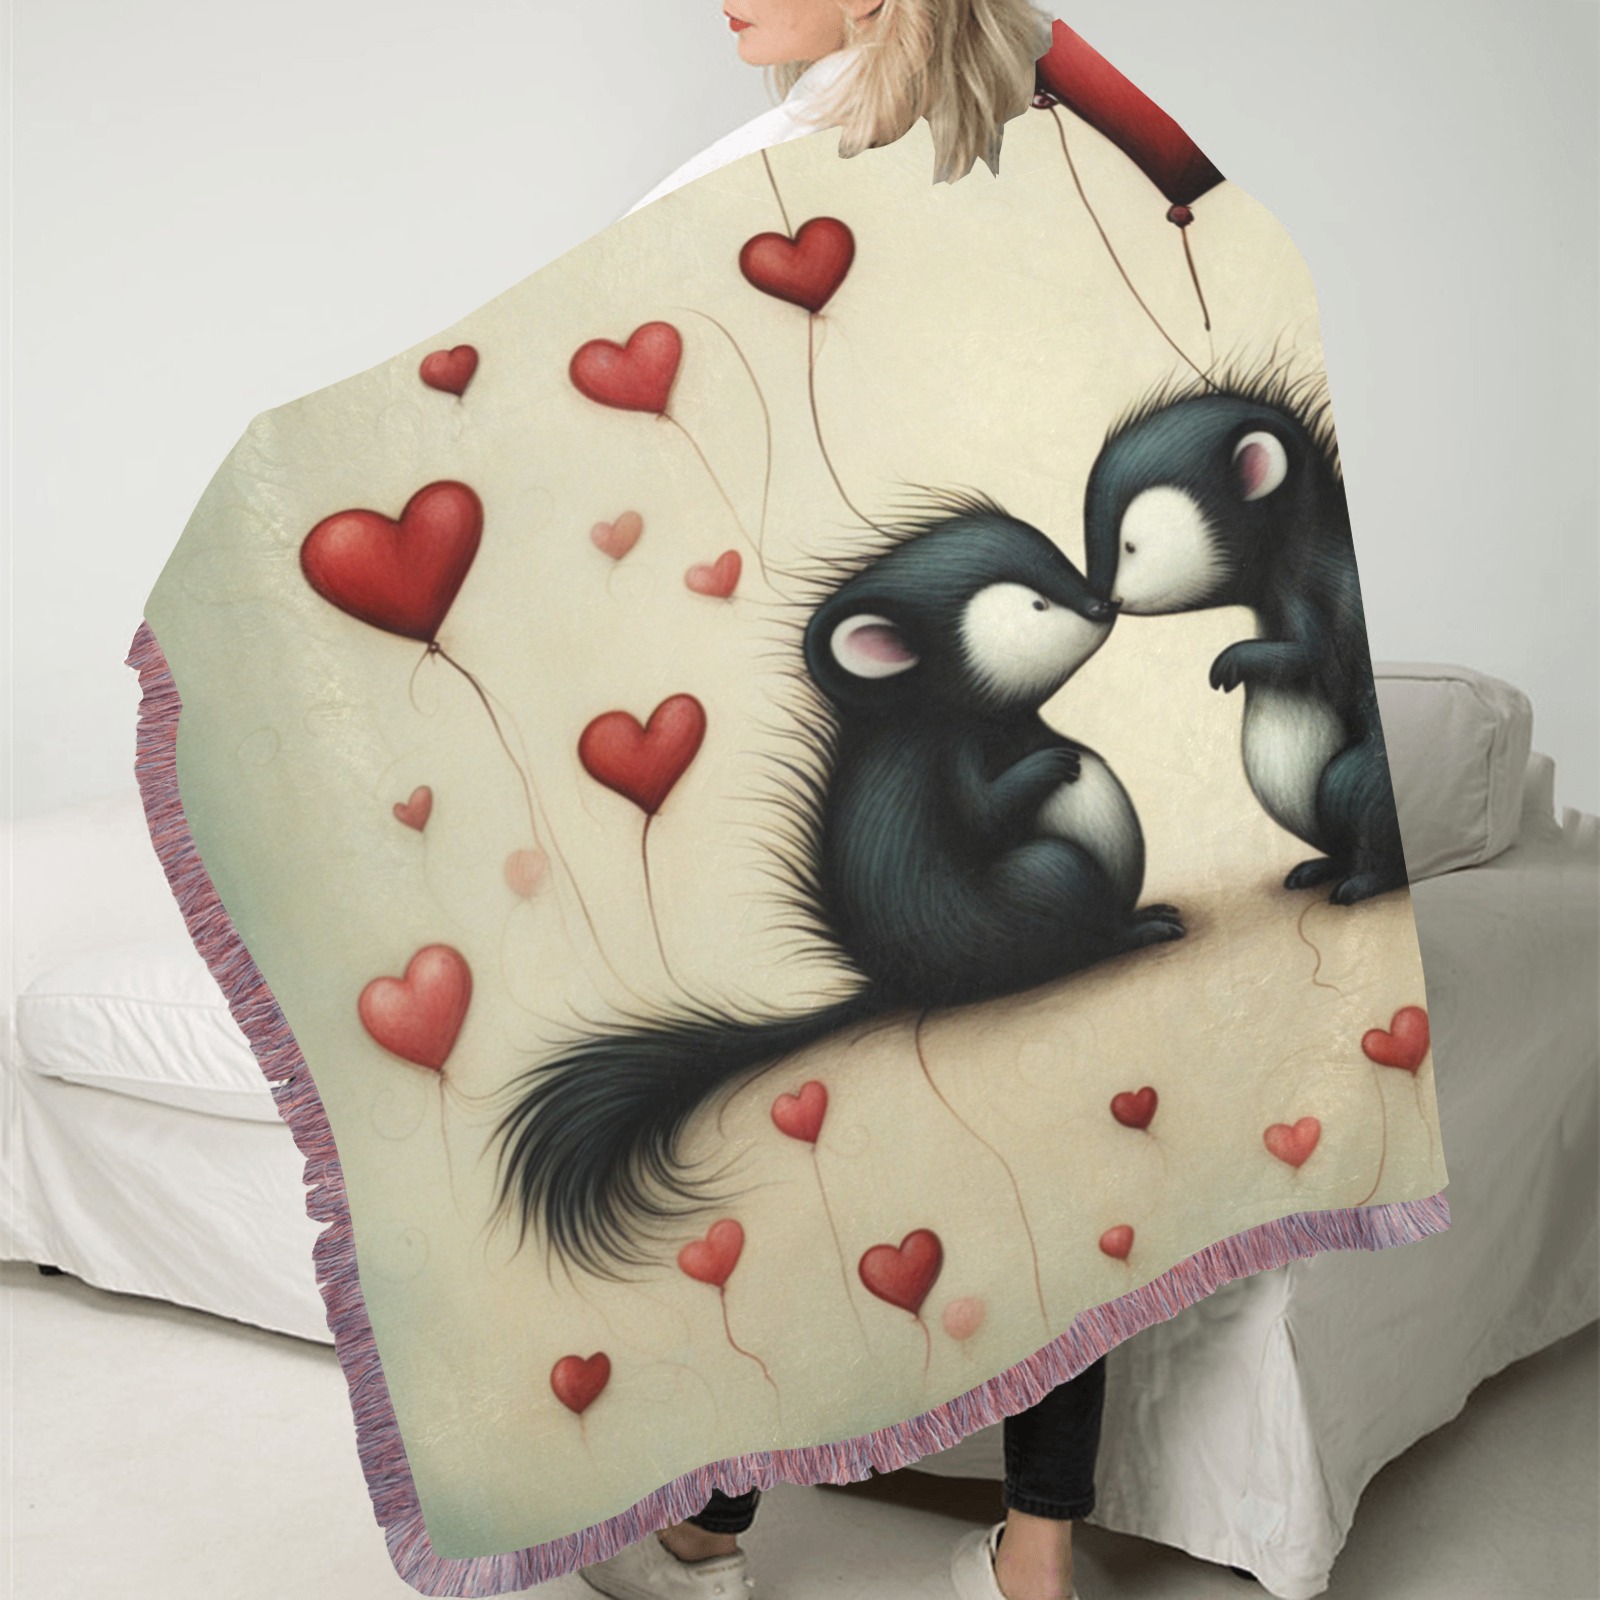 Skunk Love 1 Ultra-Soft Fringe Blanket 50"x60" (Mixed Pink)